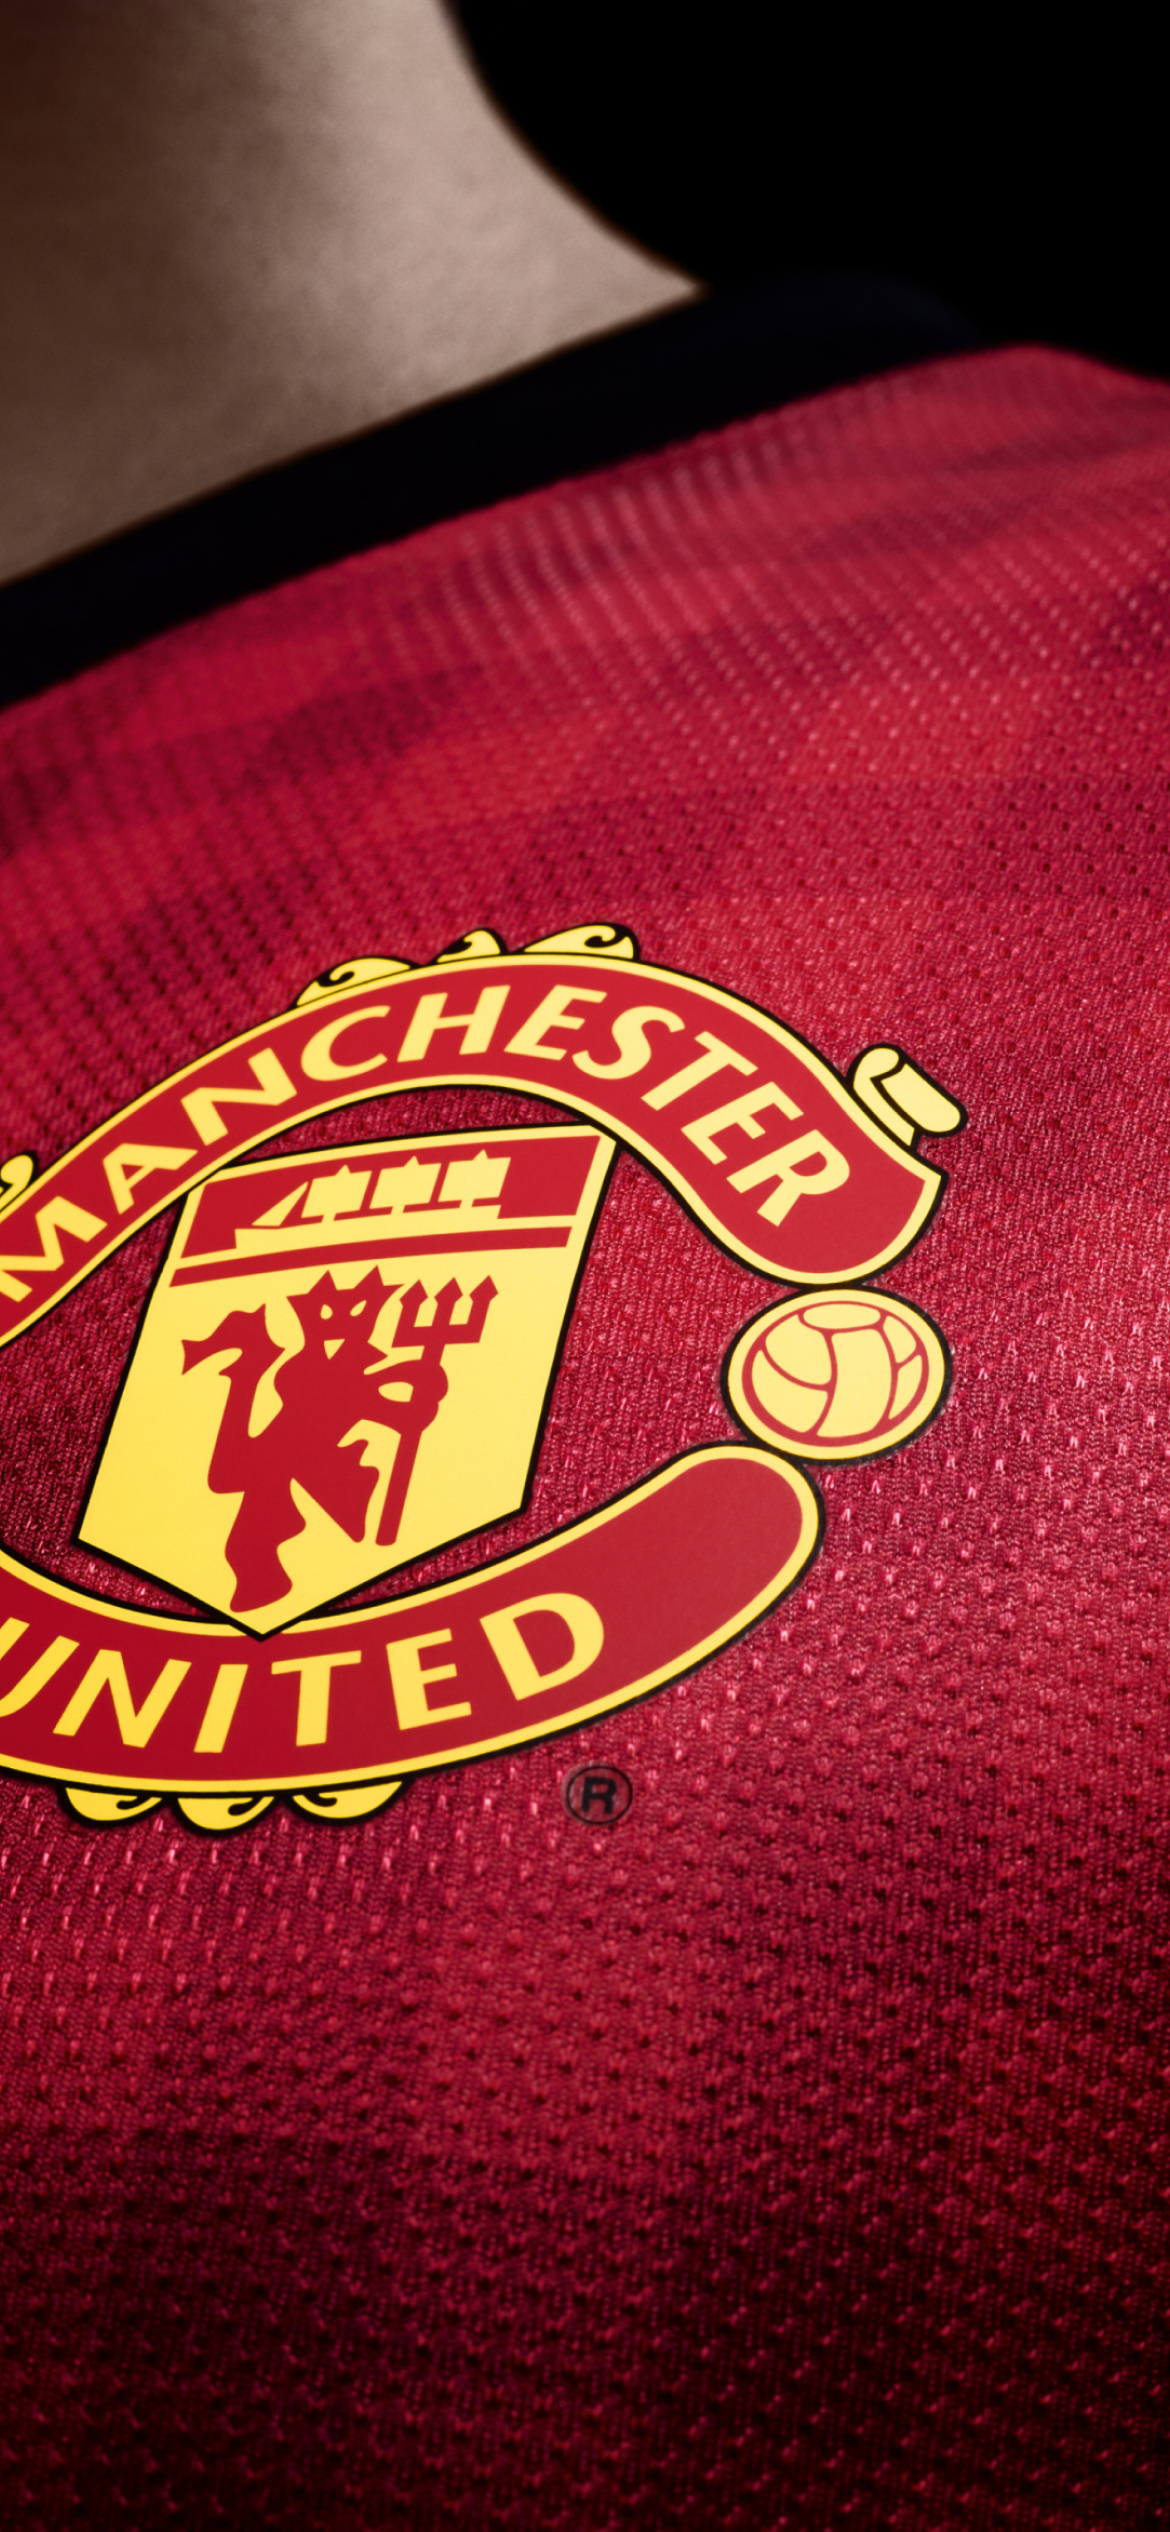 Manchester United T-Shirt wallpaper 1170x2532